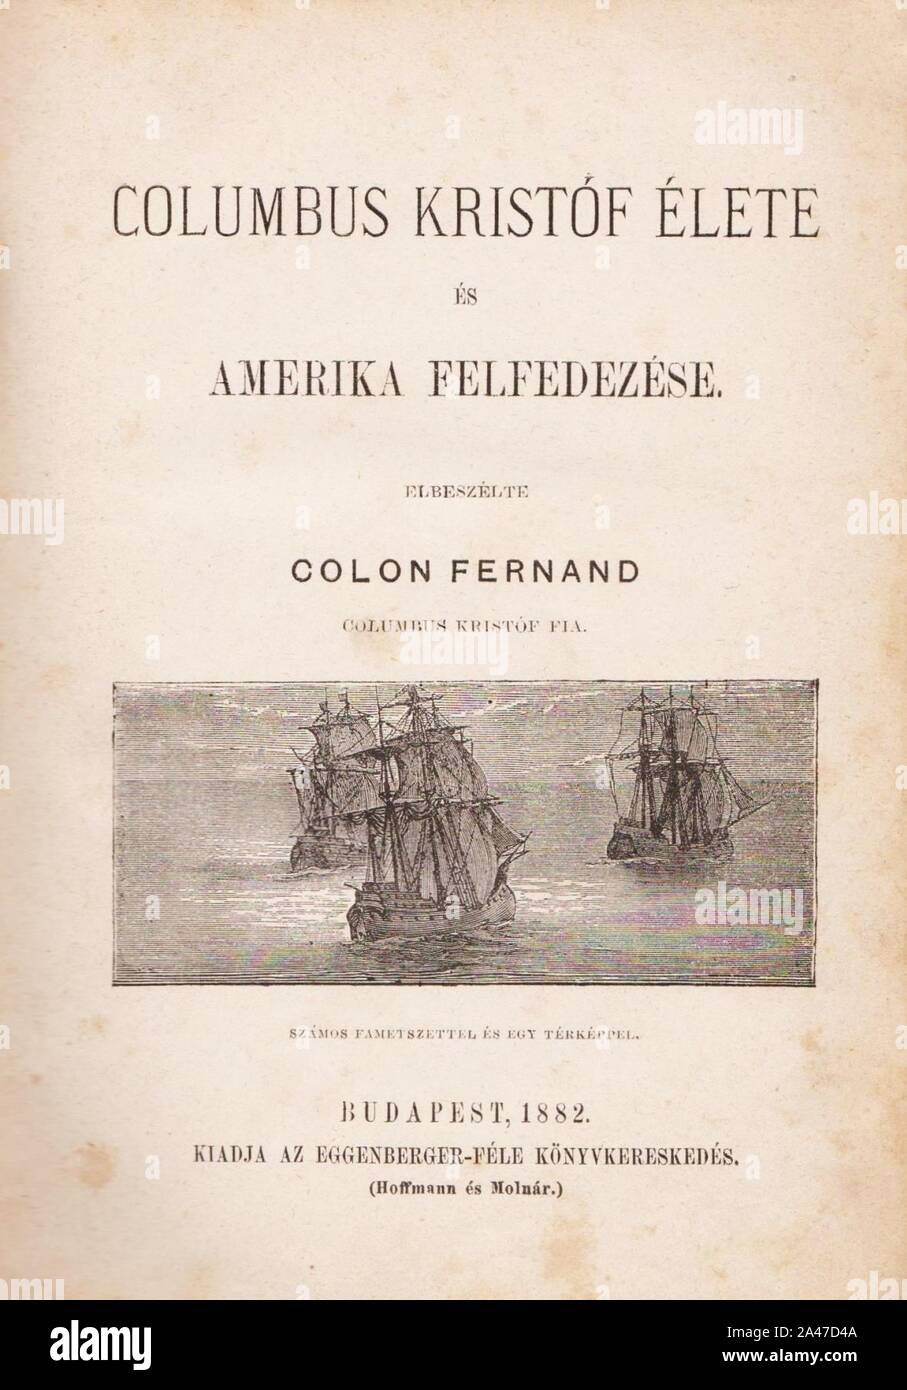 Ferdinand Colon Columbus Kristóf élete és Amerika felfedezése címlap Stock  Photo - Alamy